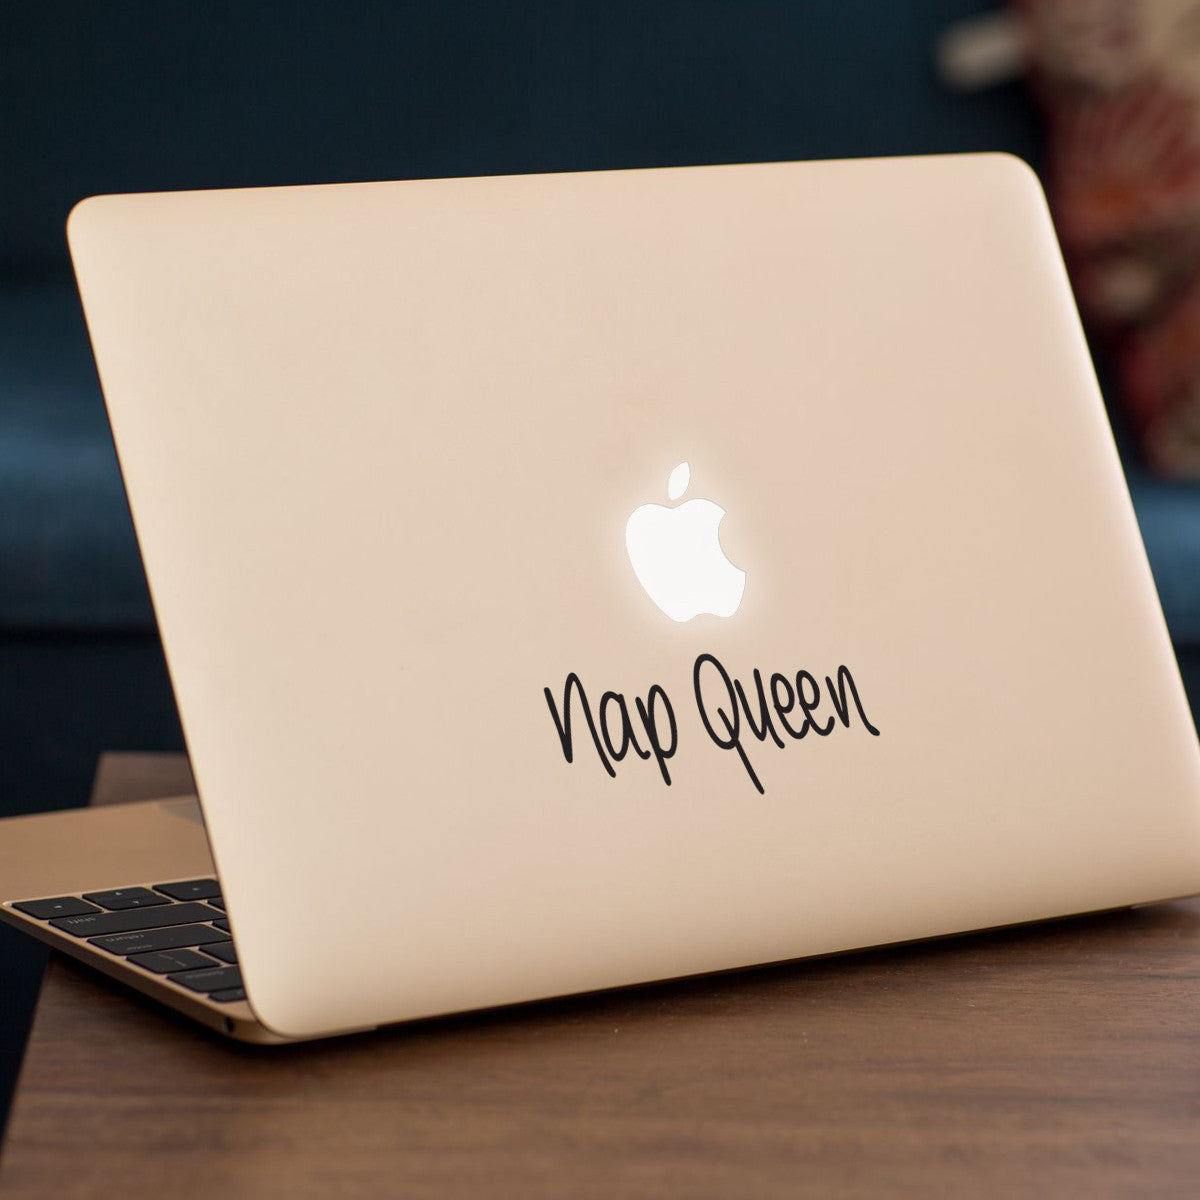 Nap Queen Macbook Decal